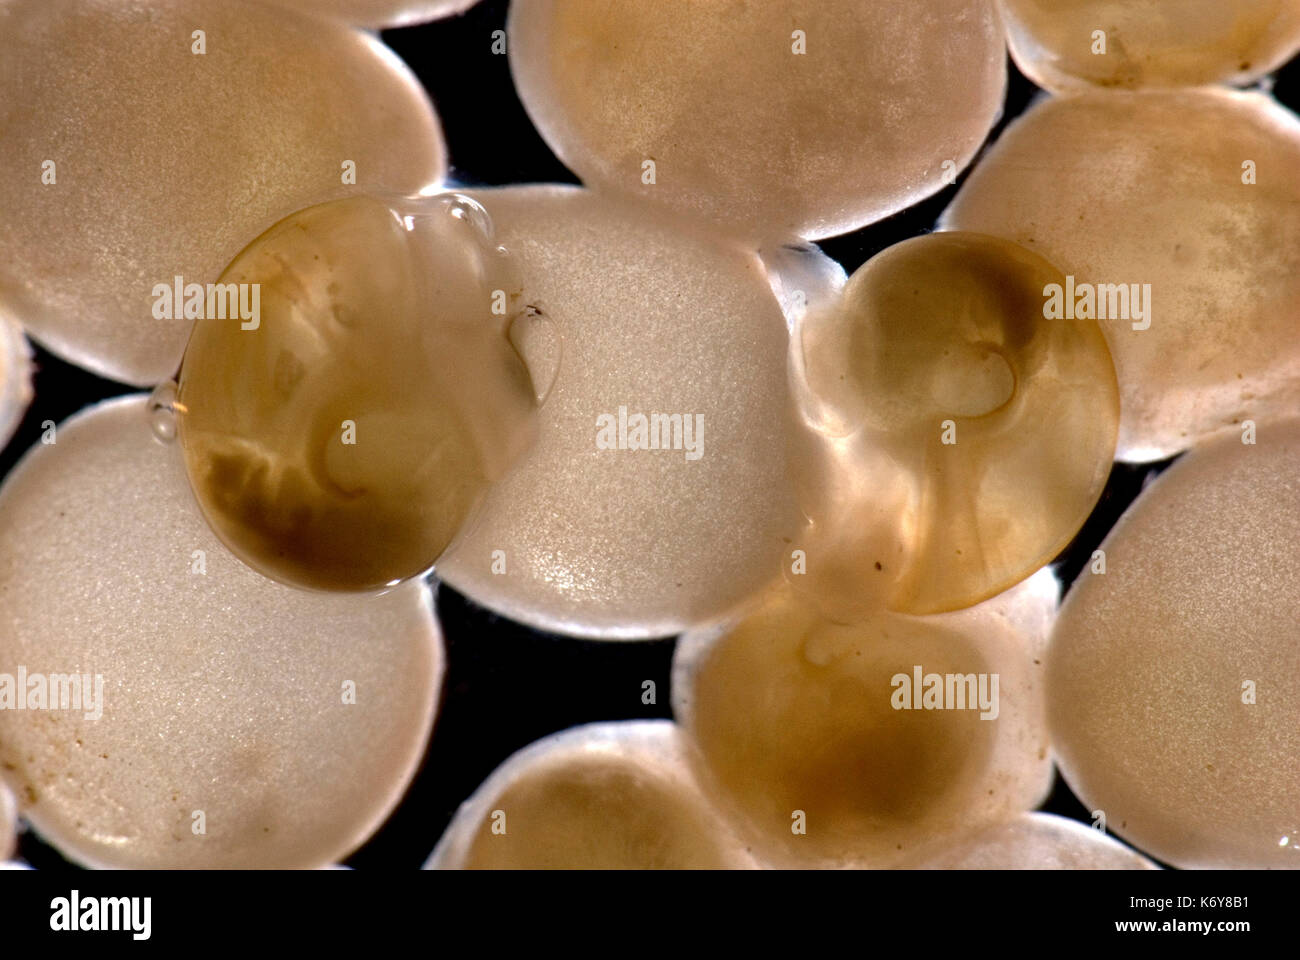 Giardino lumaca, Helix Aspersa, appena nati da uova, trasparente giardino animali mollusco natura la notte di Pest wildlife appena tratteggiato lumaca di giardino Foto Stock